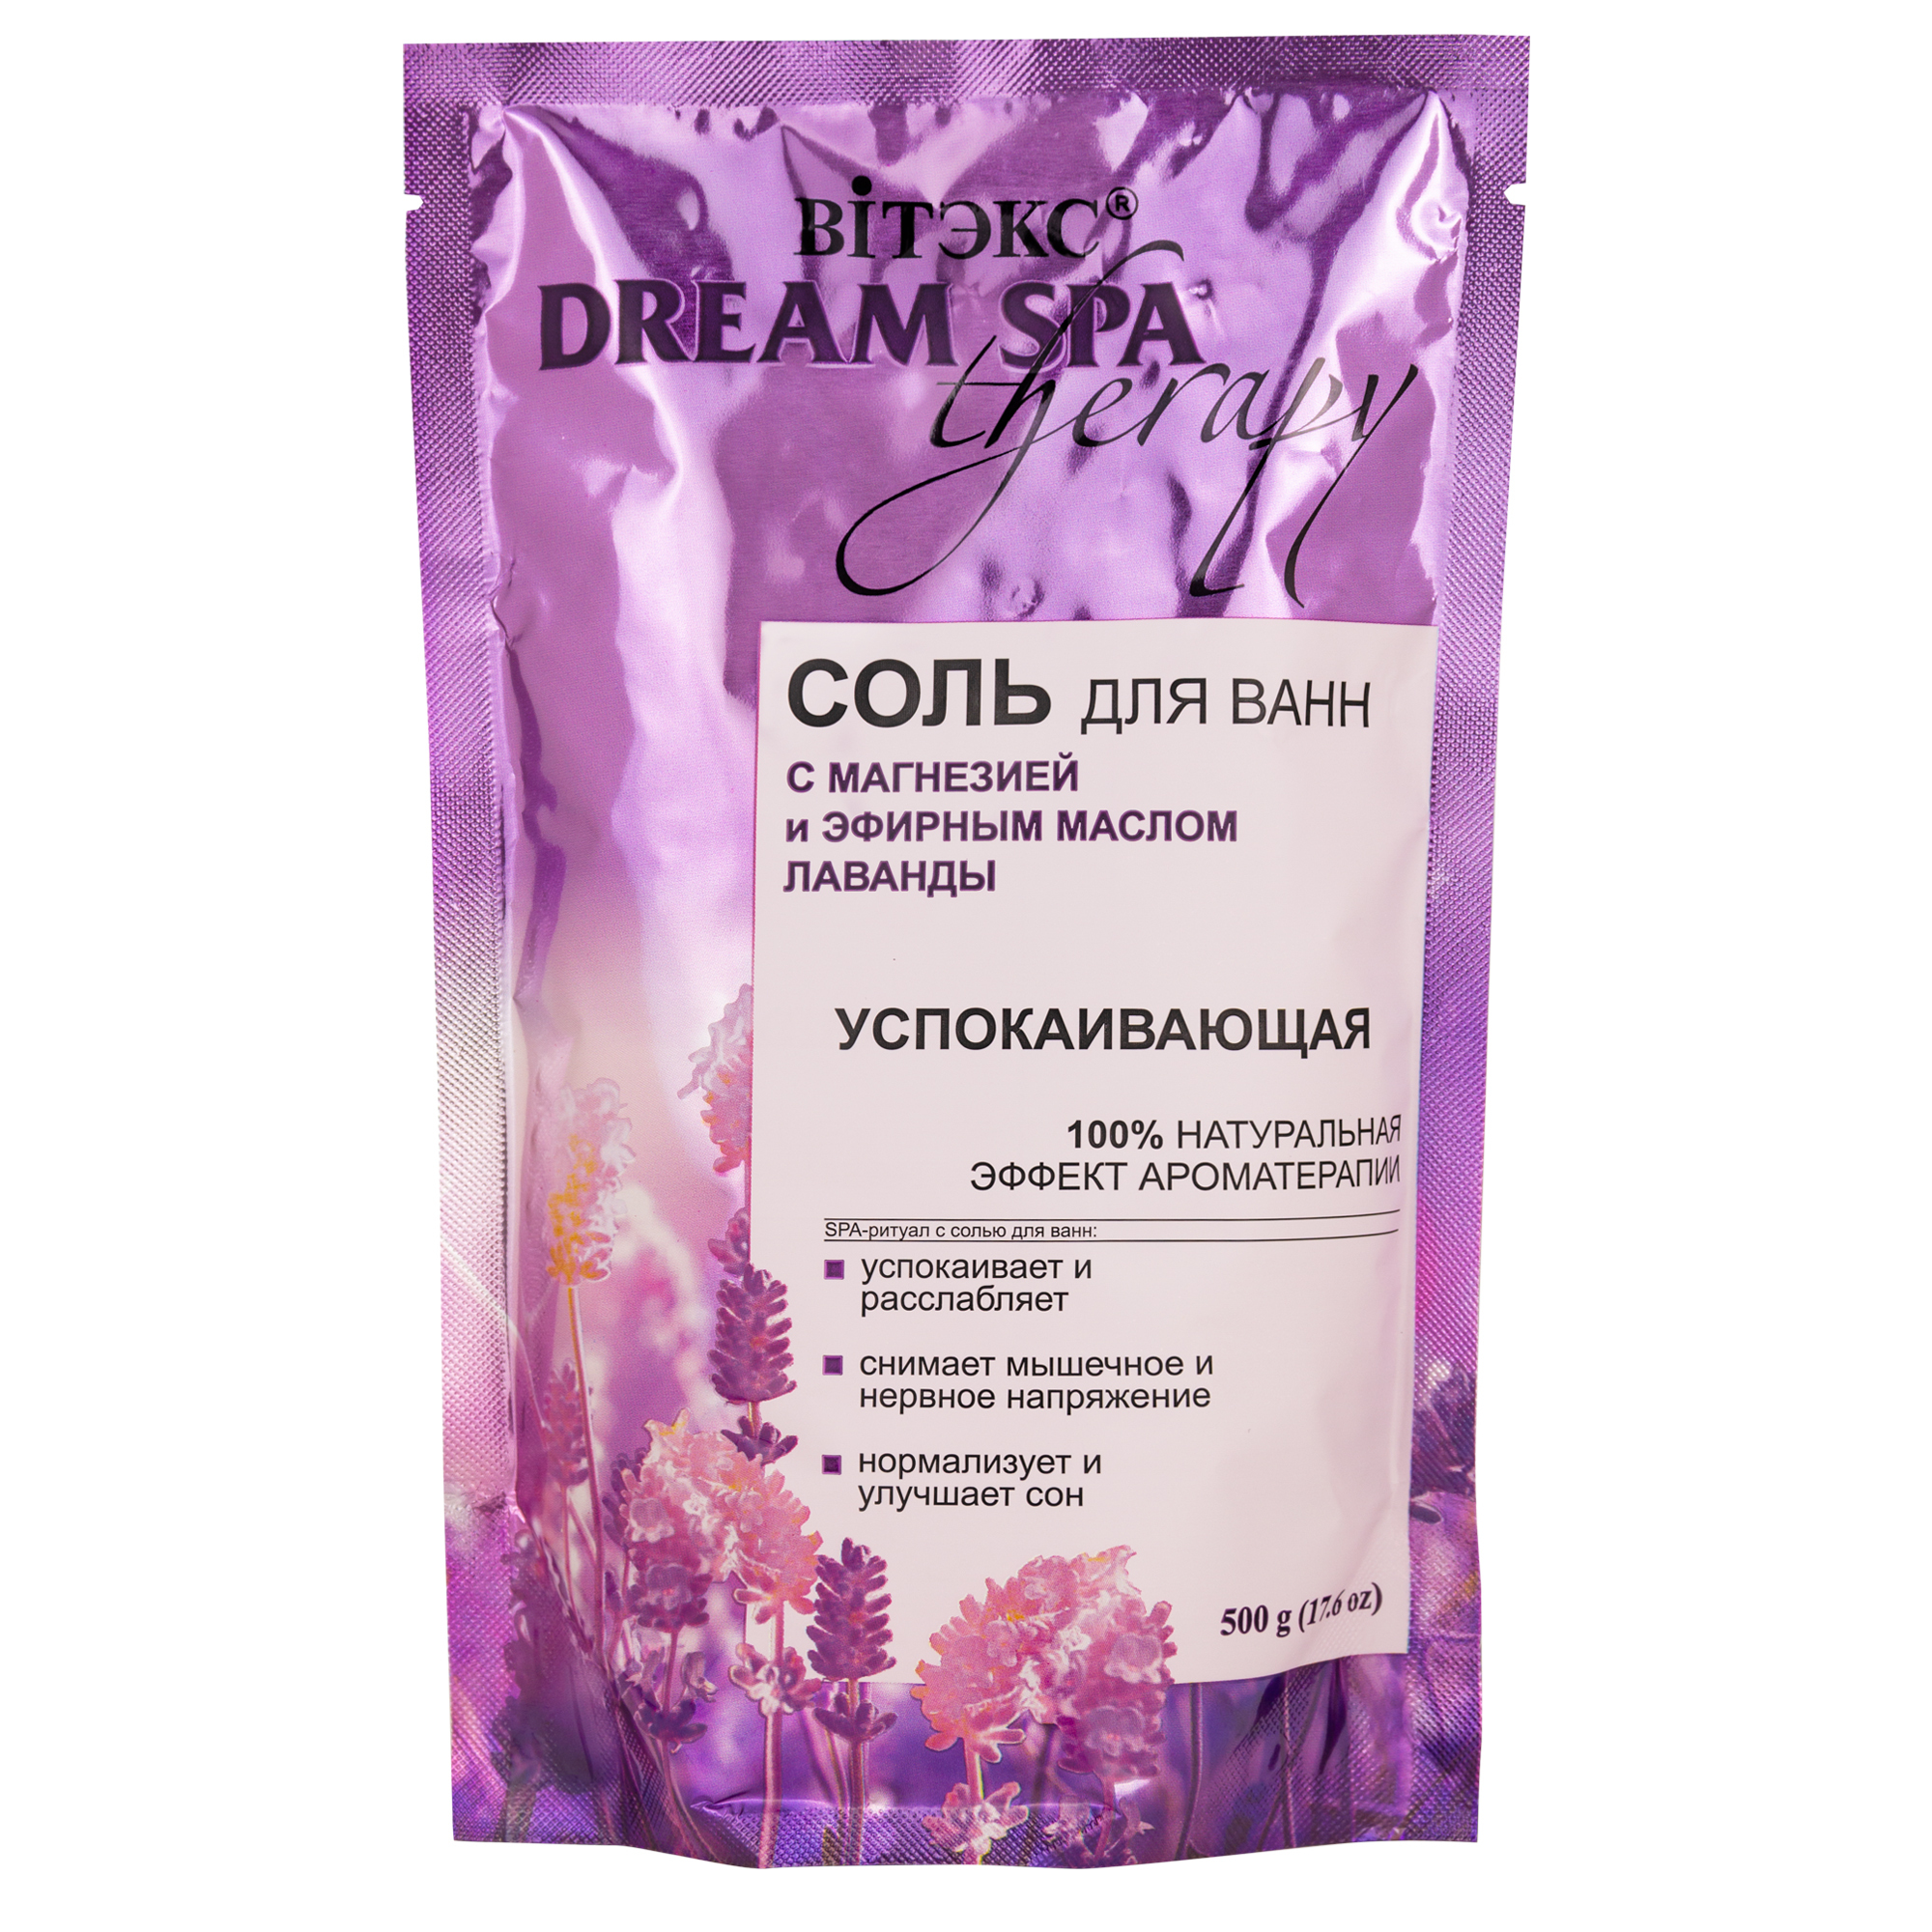 Витекс Dream SPA therapy Соль для ванн УСПОКАИВАЮЩАЯ с магнезией и аромамаслом лаванды,500 г